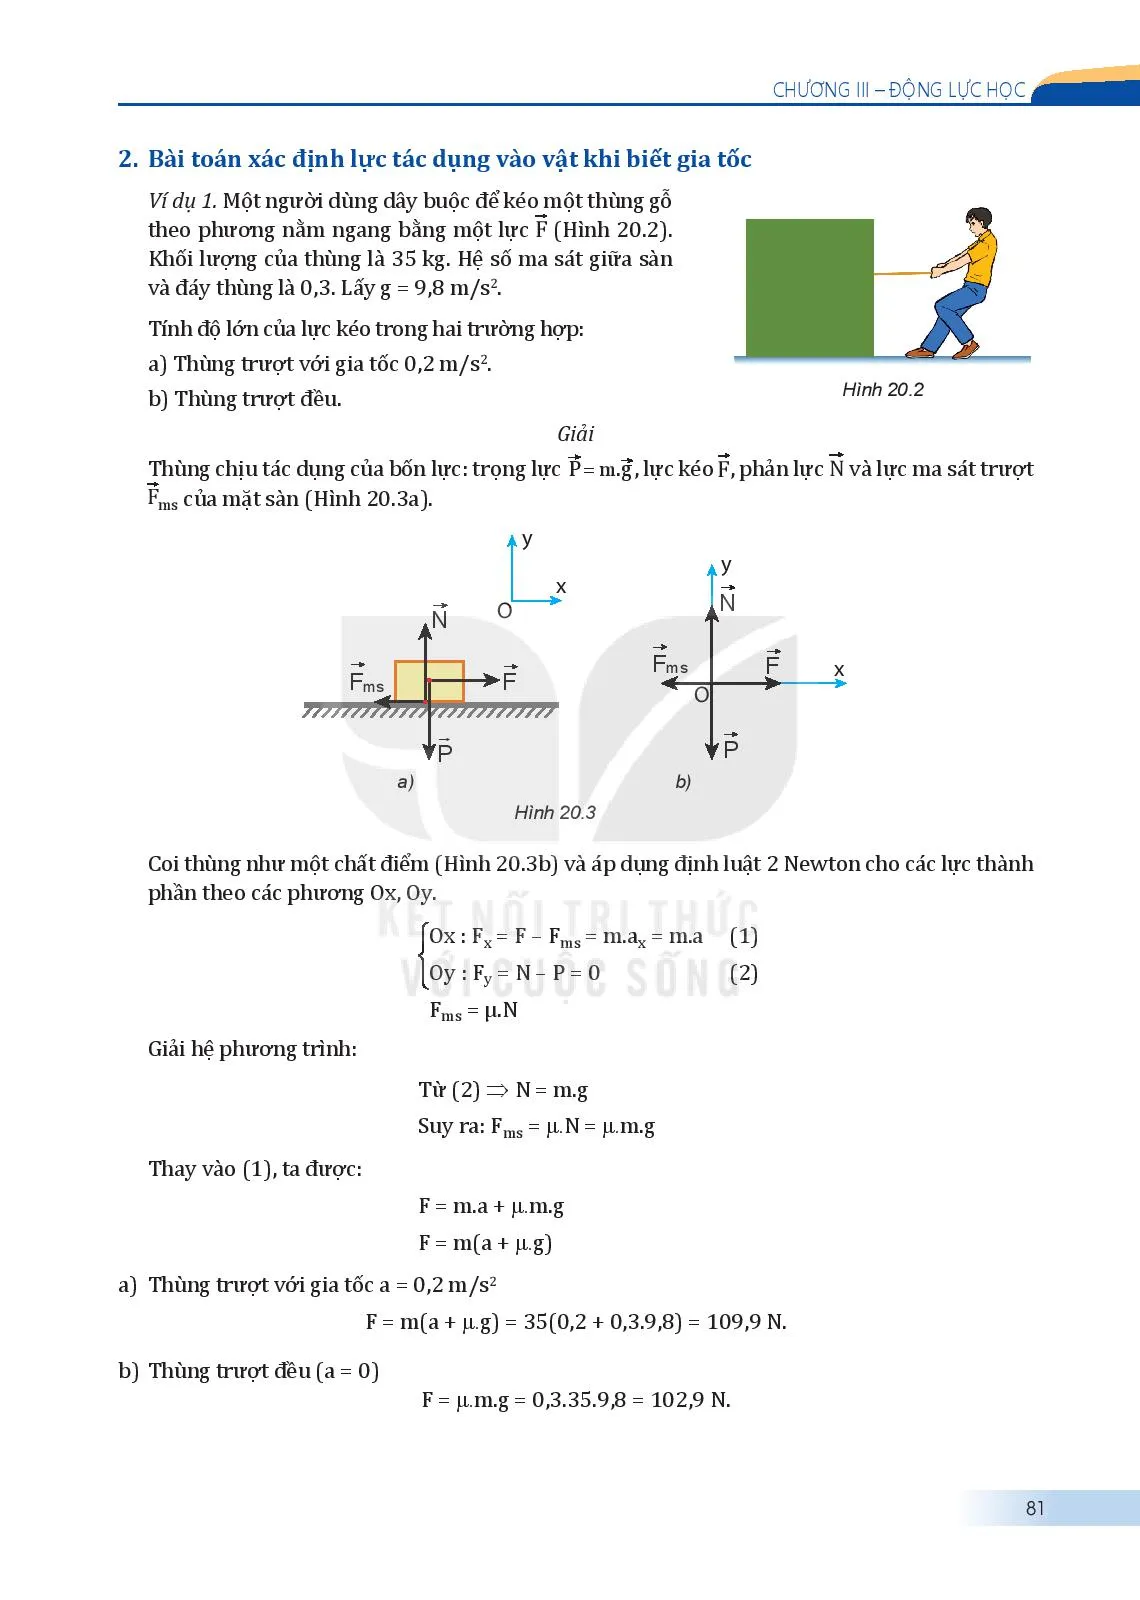 Bài 20. Một số ví dụ về cách giải các bài toán thuộc phần động lực học